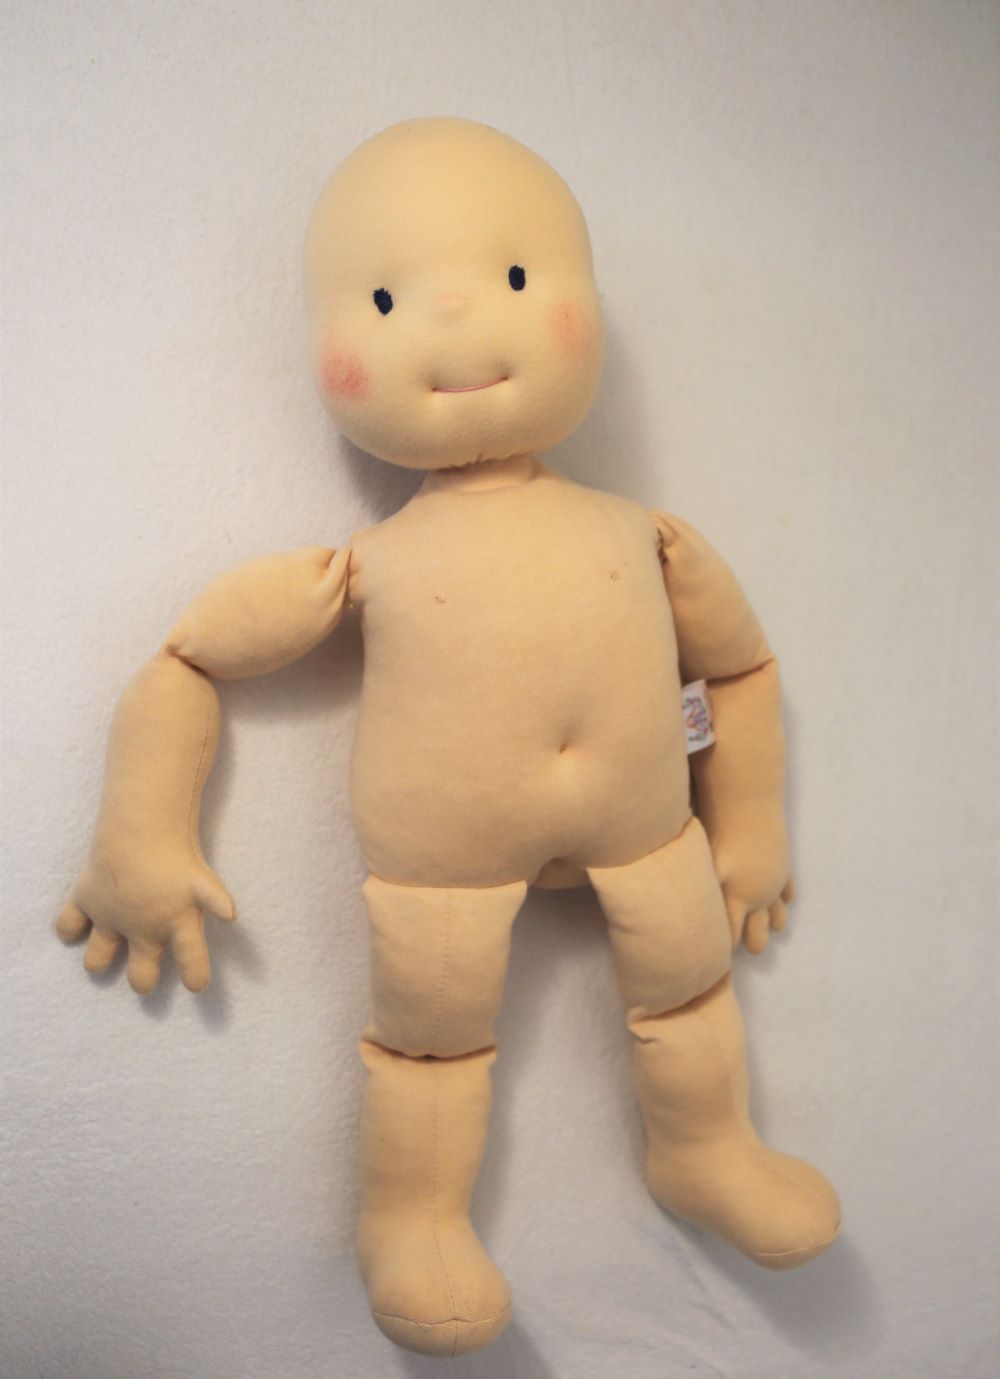 Fyziopanenka špunt, panenka 50 cm vysoká plněná umělým vláknem